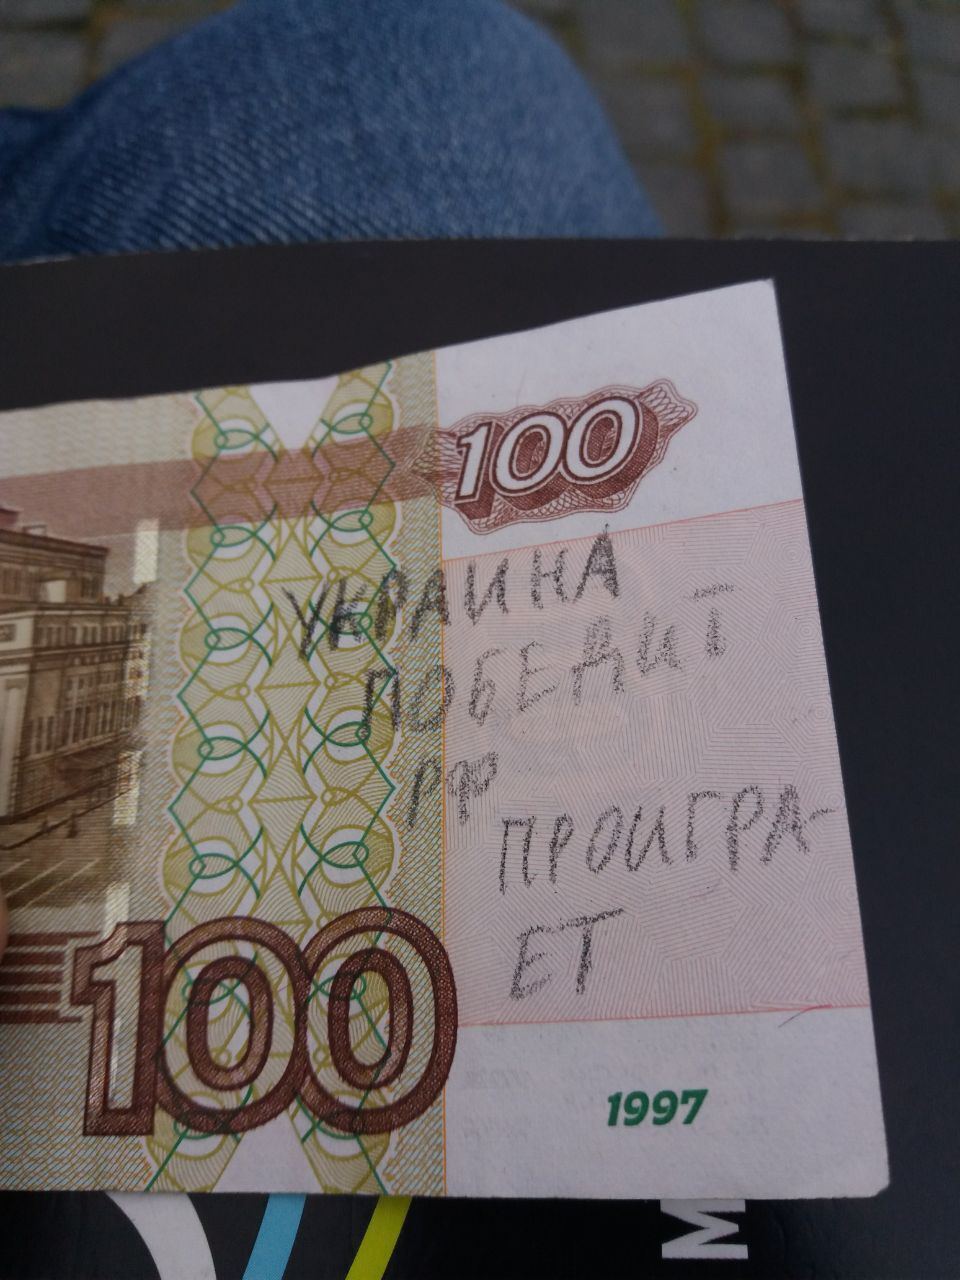 "Украина победит": патриоты "подправили" дизайн российских рублей на оккупированной территории Украины. Фото